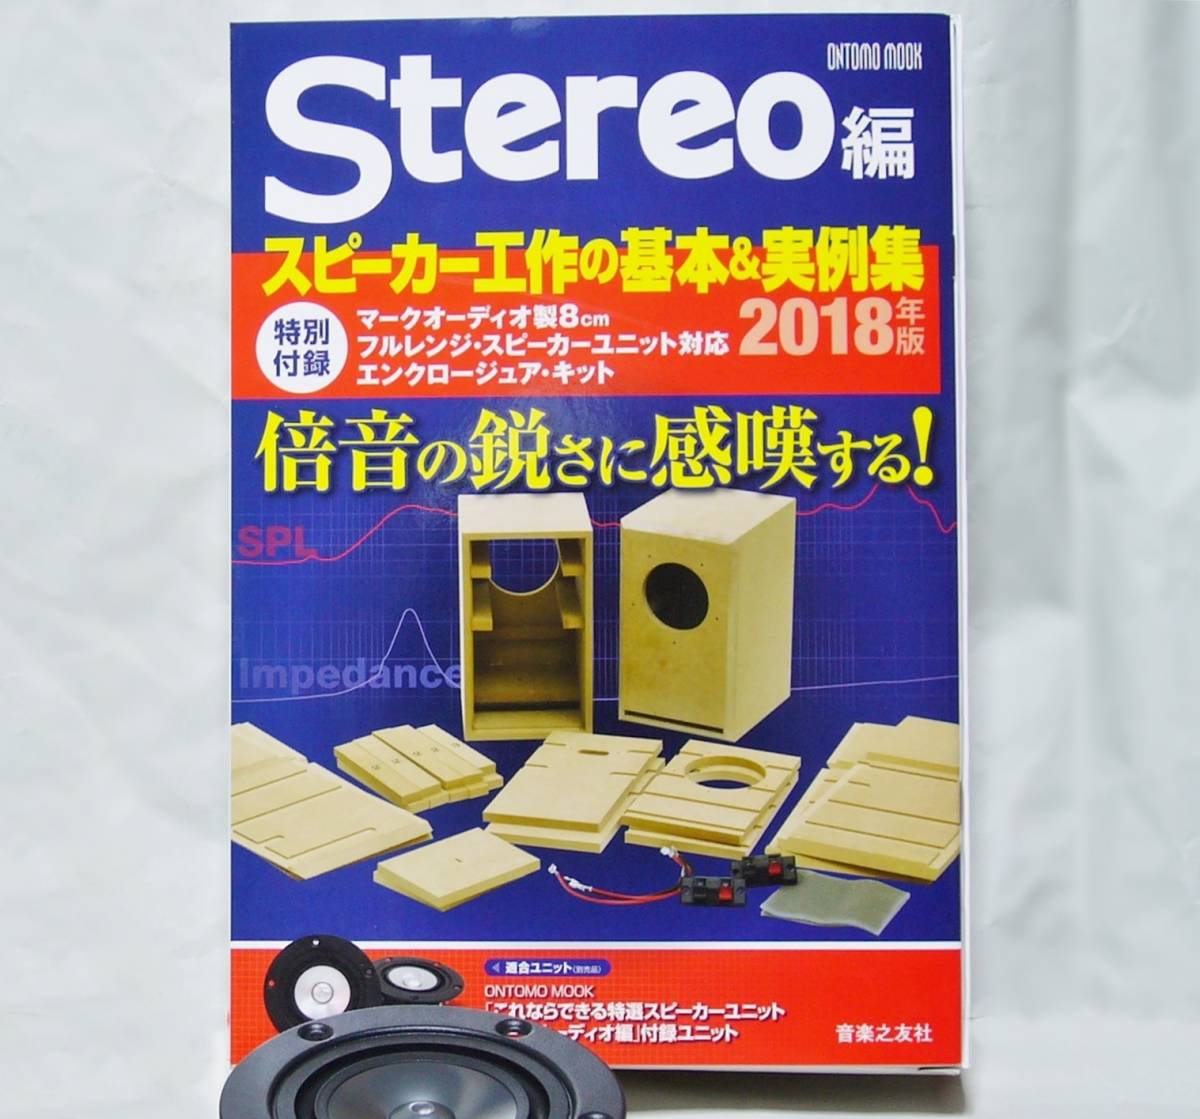 Stereo誌付録 8cmフルレンジ (OM-MF5 及び519) 専用エンクロージャー